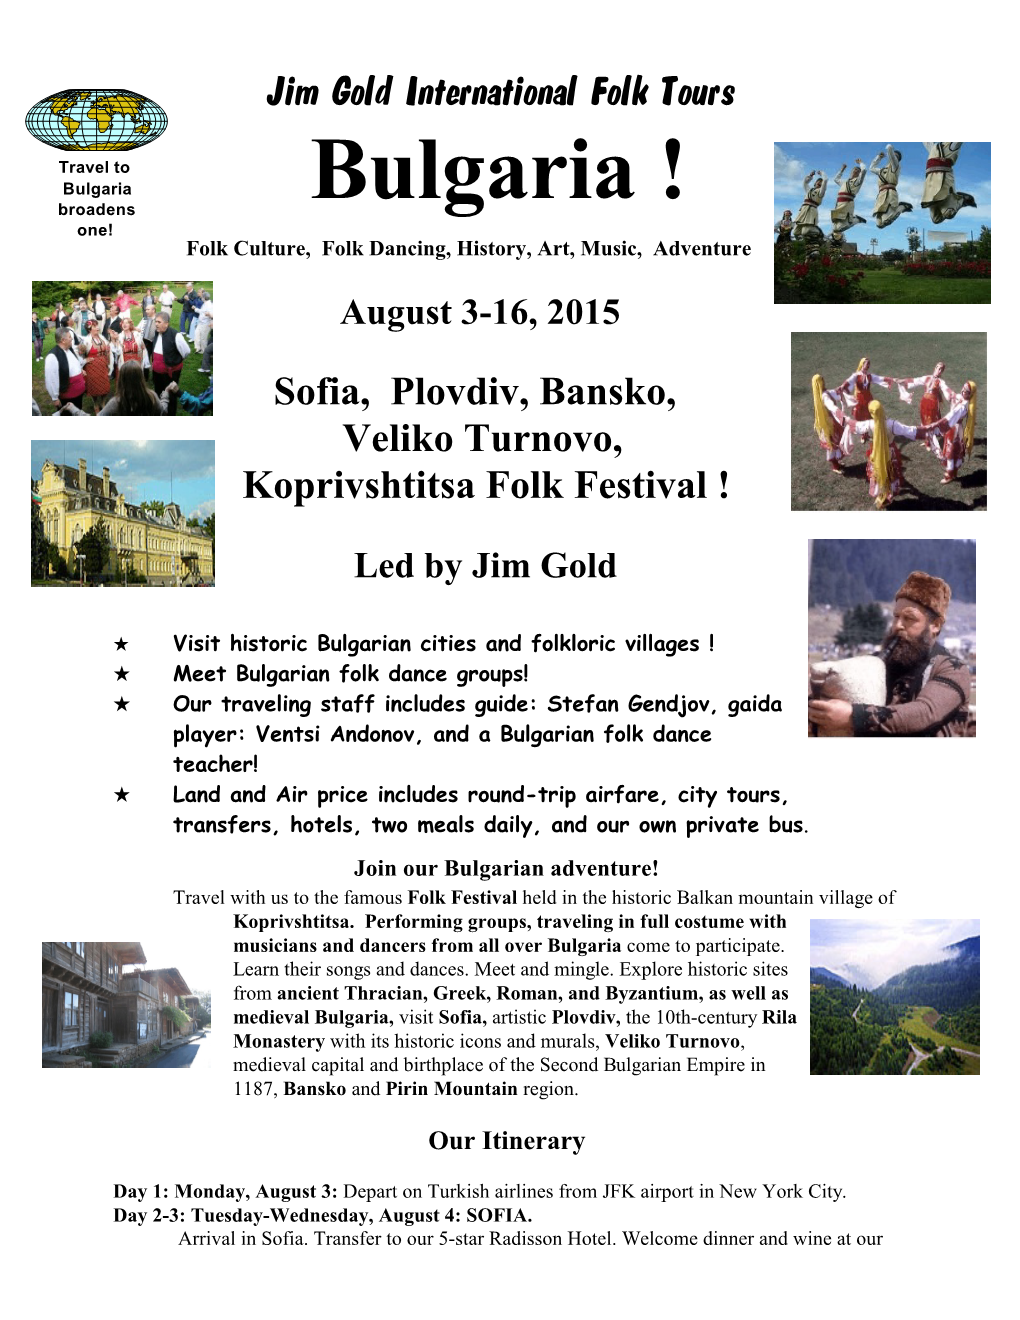 Bulgaria and the Koprivshtitsa Folk Festival. August 2015